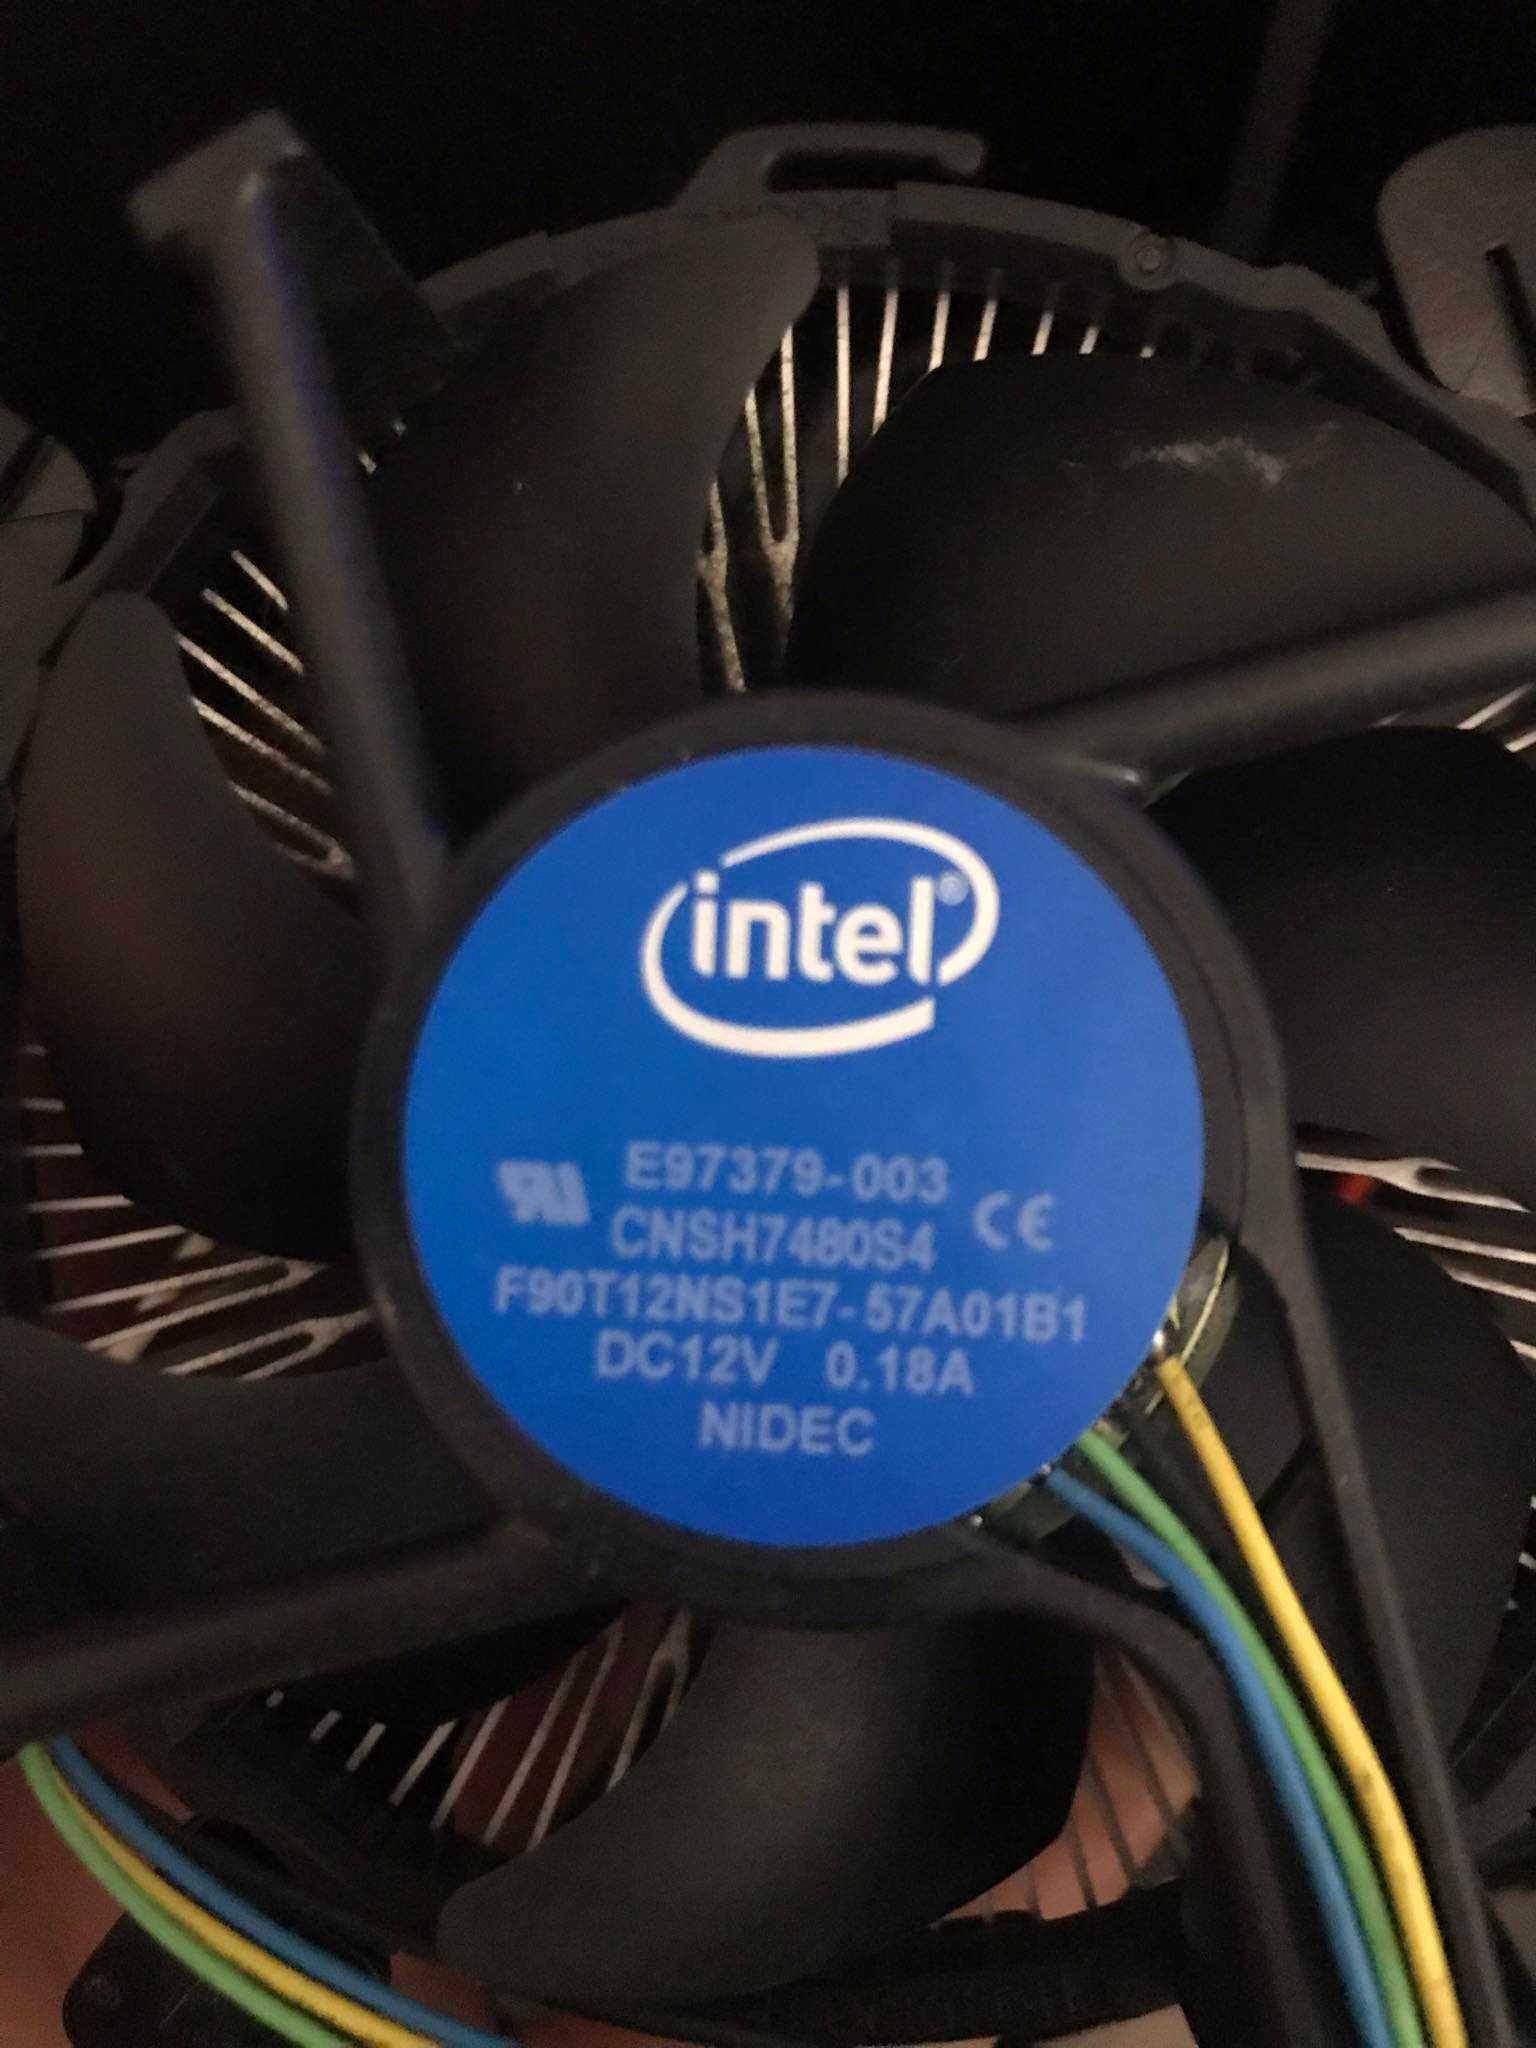 Chłodzenie procesora powietrzem Intel E97379 -003